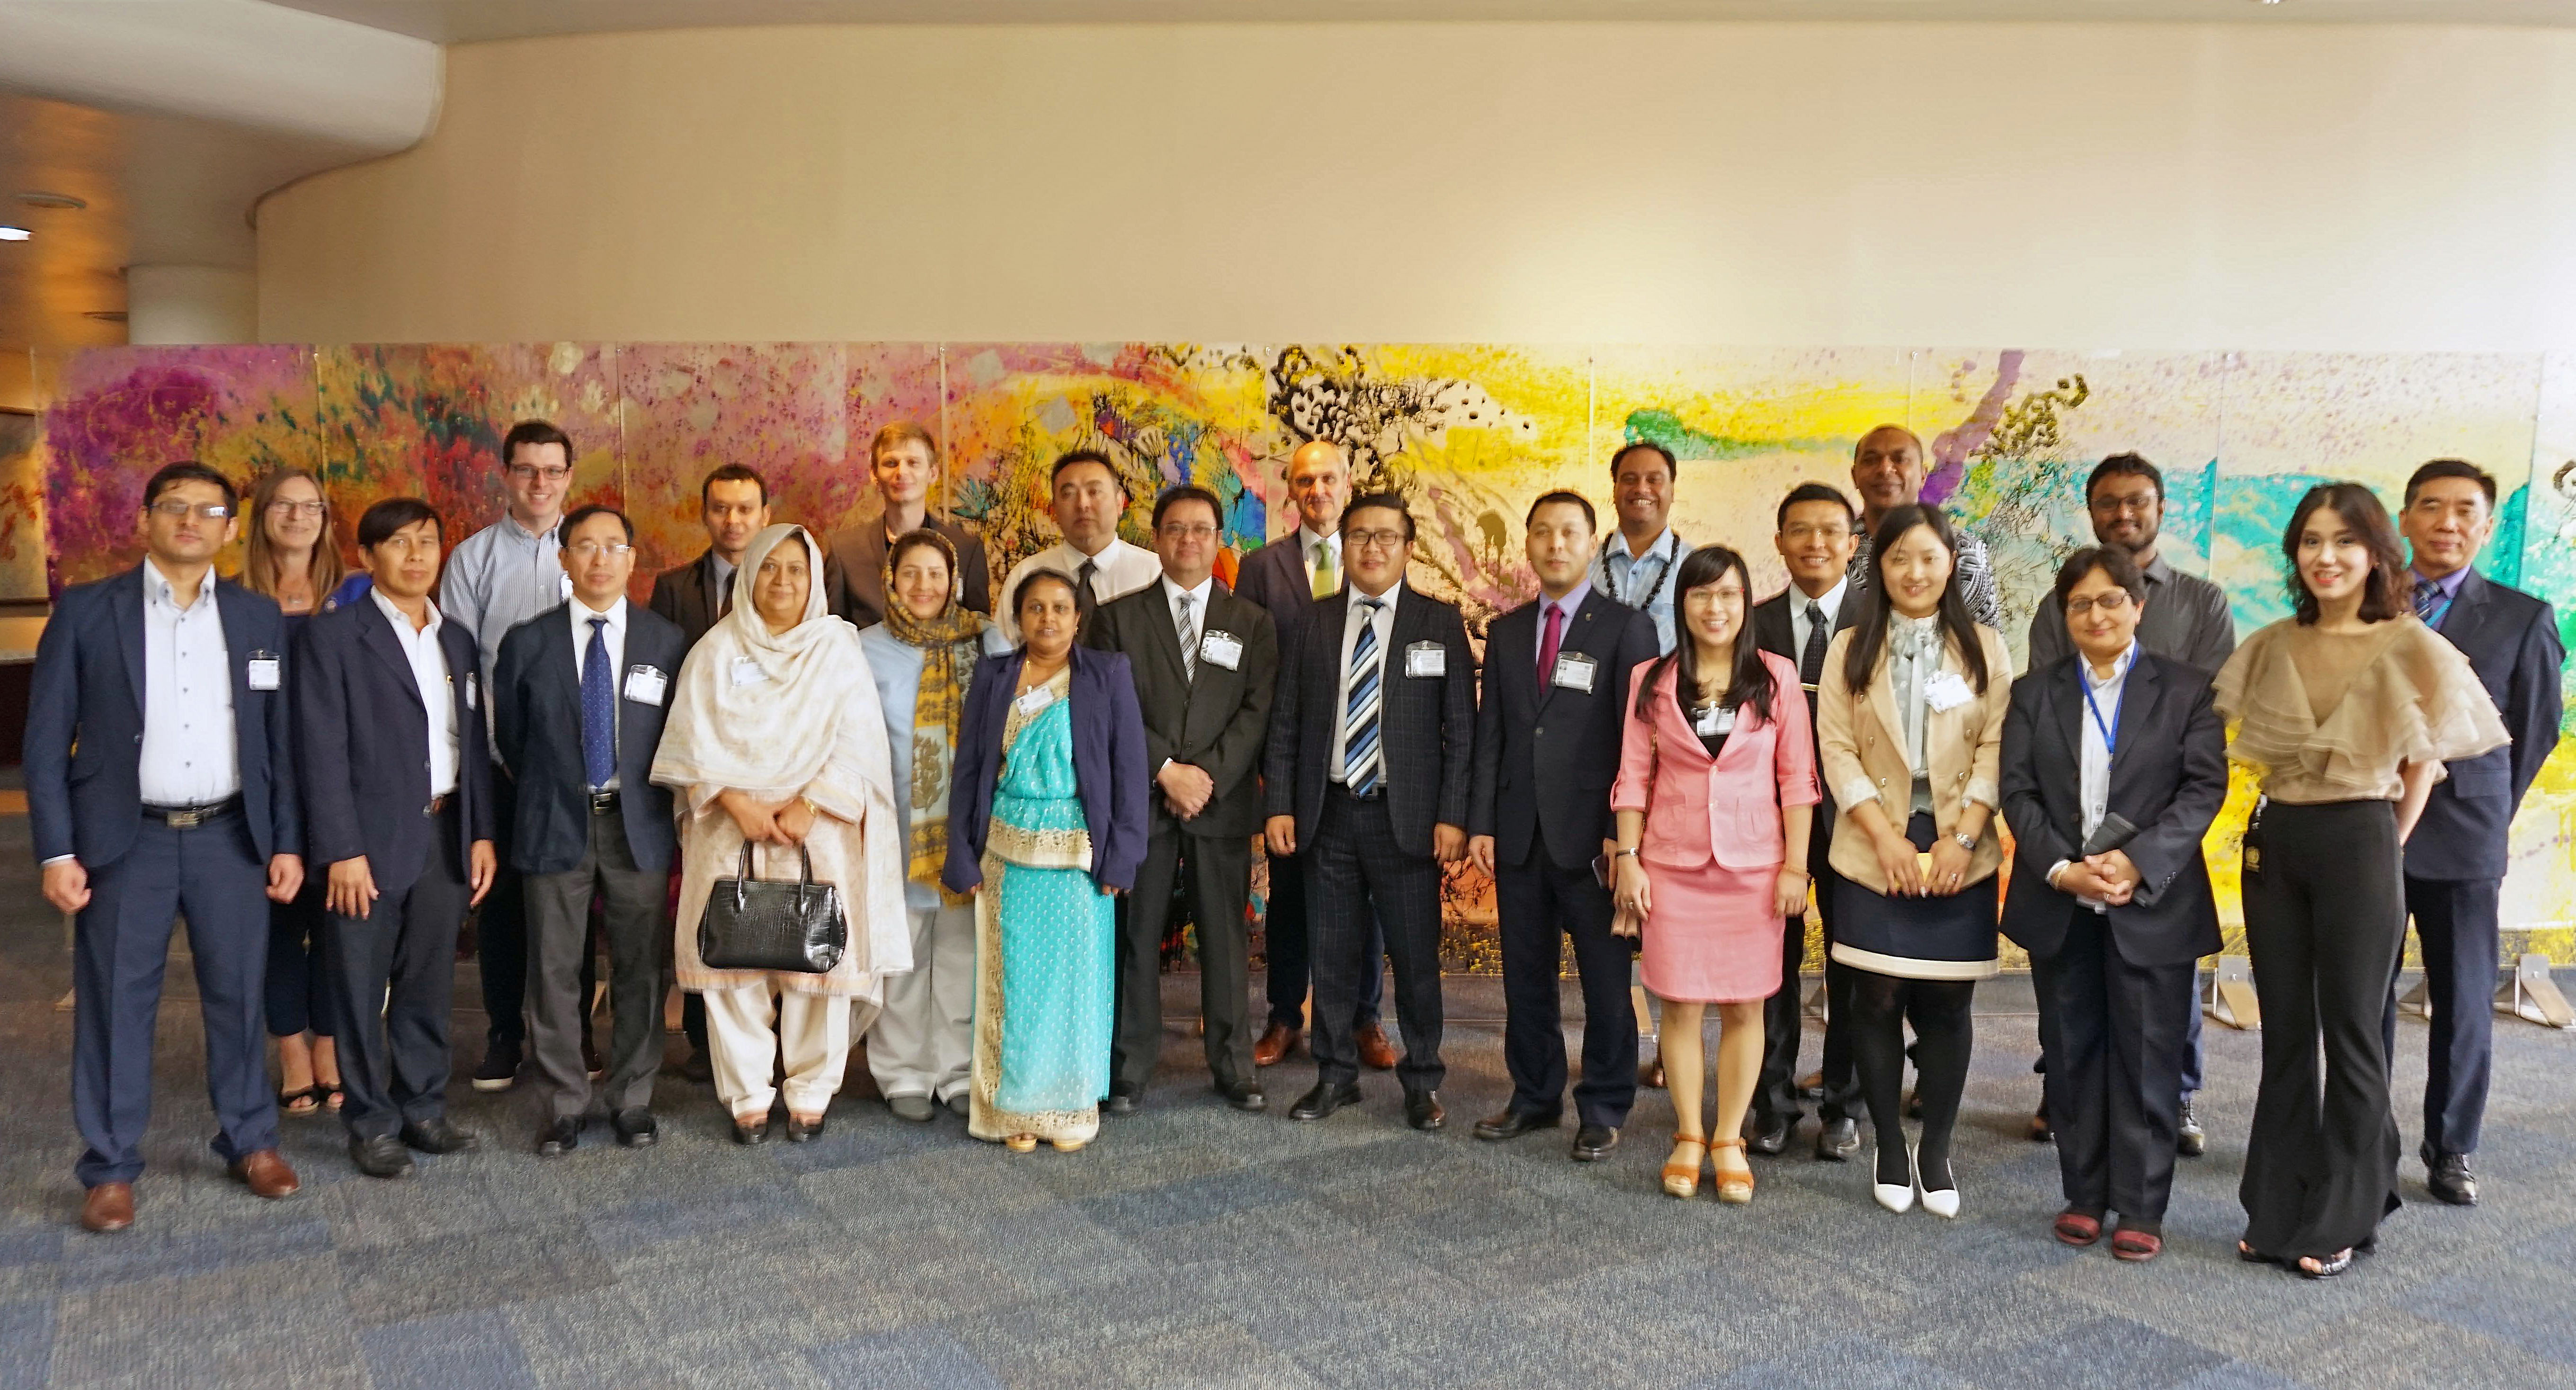 GEMS/Water regional workshop for Asia Pacific held in Bangkok